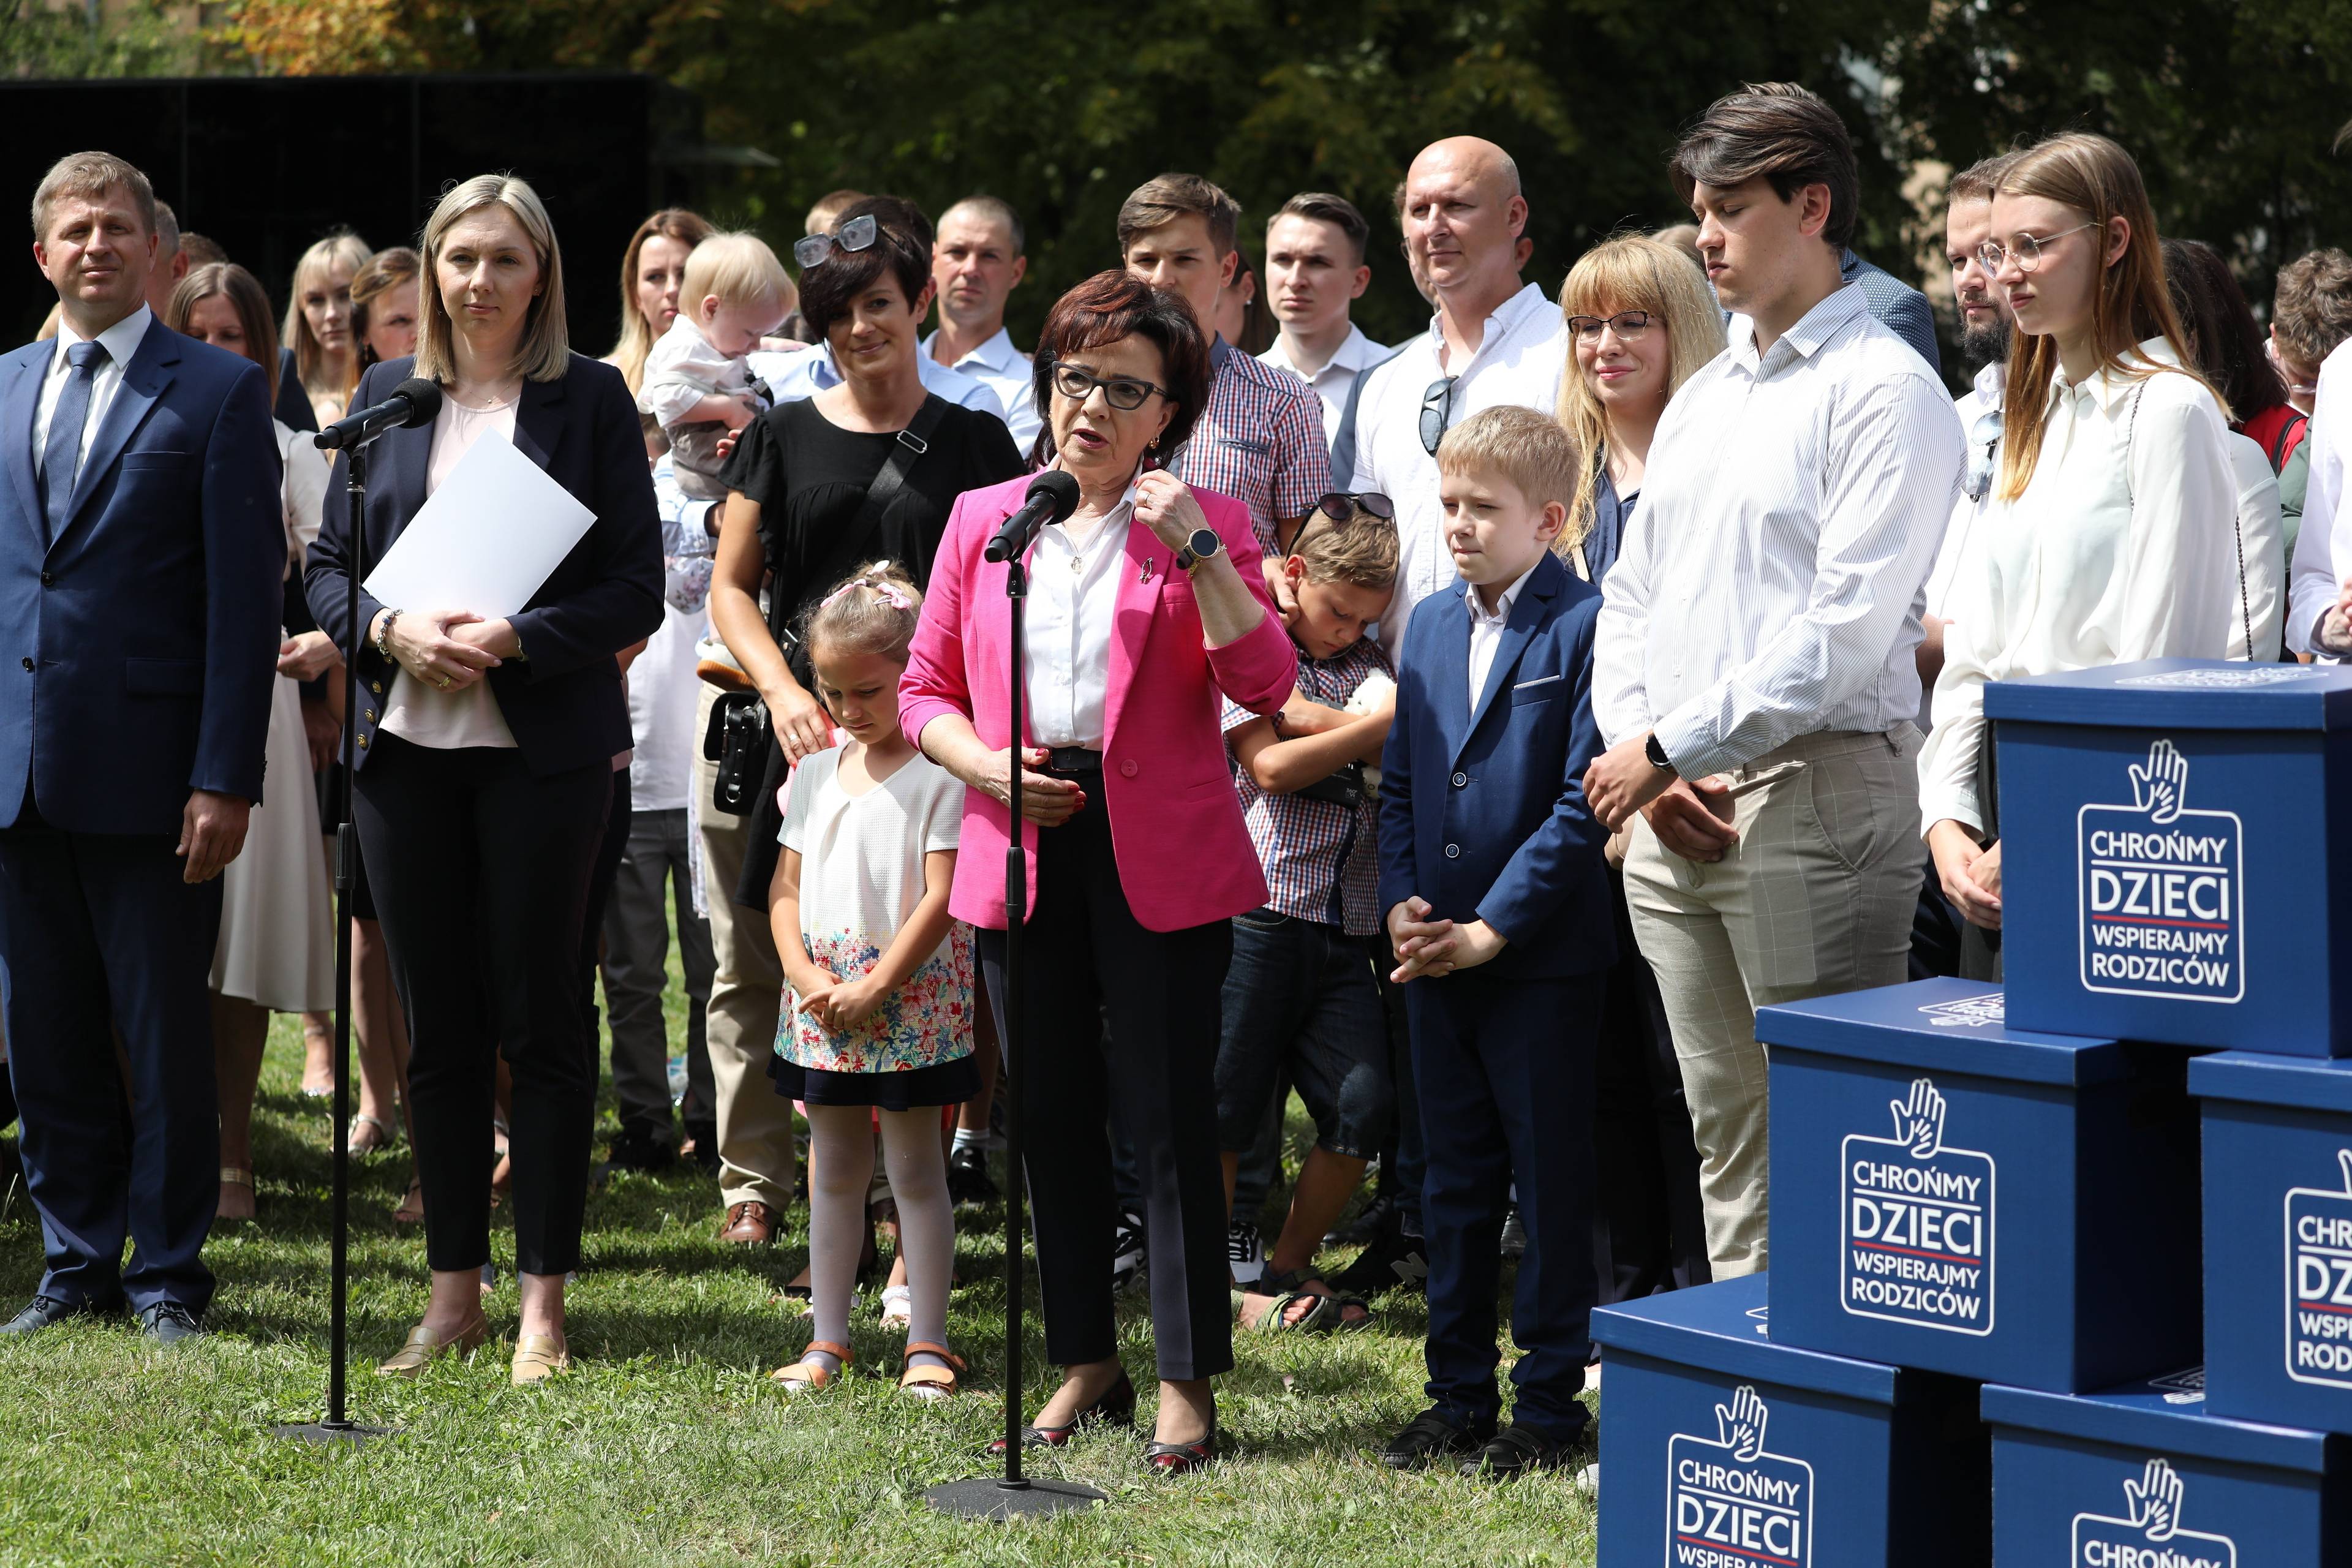 Grupa dorosłych i dzieci stoi na świeżym powietrzu, na pierwszym planie brunetka w purpurowym żakiecie i okularach przed mikrofonem - marszałek Witek